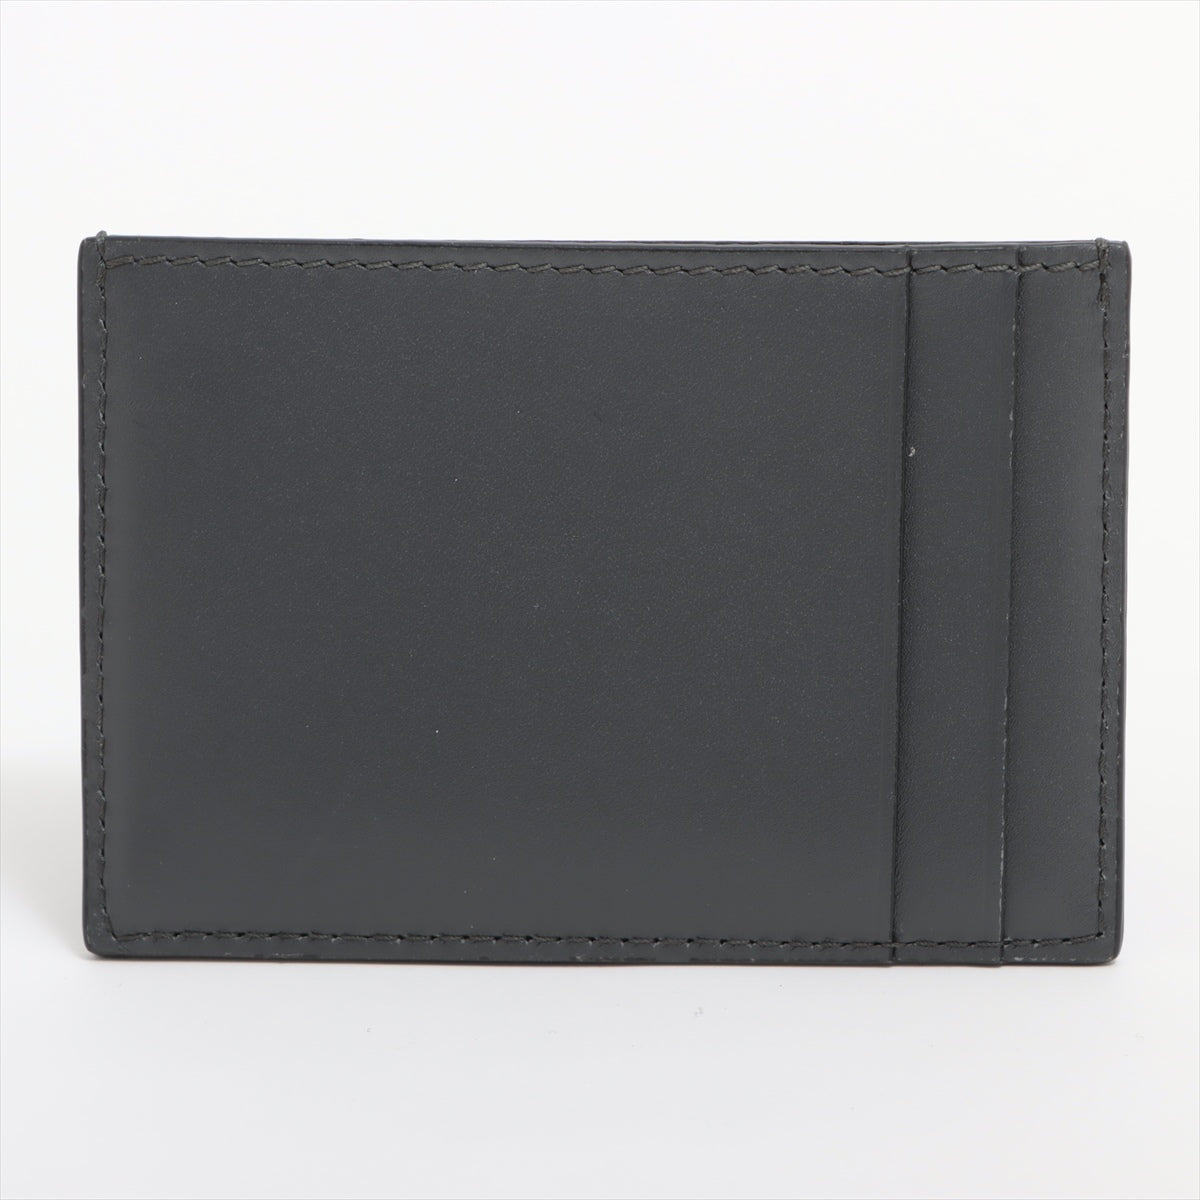 Tiffany Leather Card Case Grey